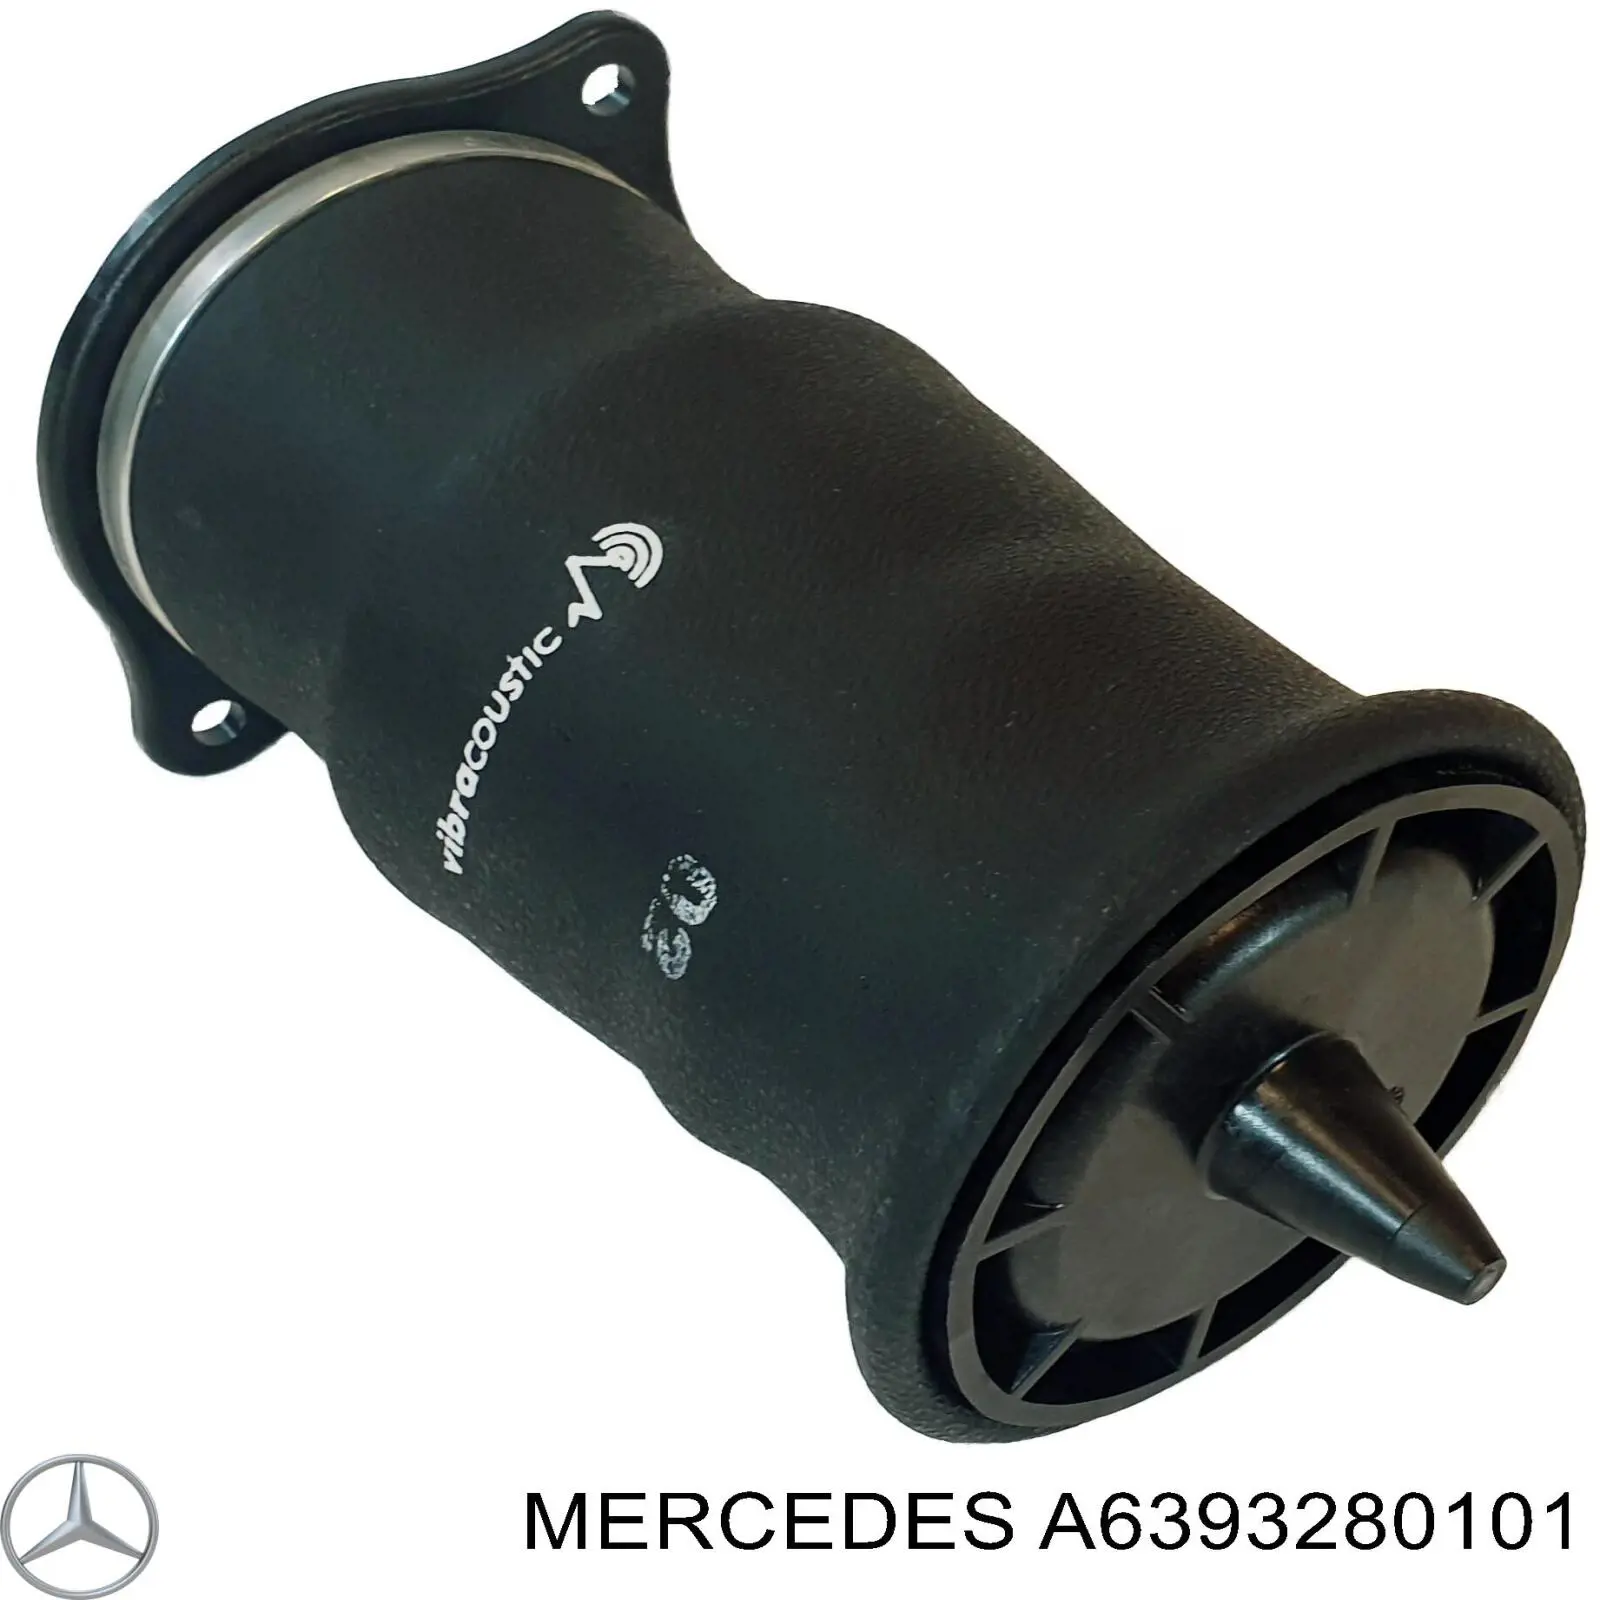 A6393280101 Mercedes muelle neumático, suspensión, eje trasero